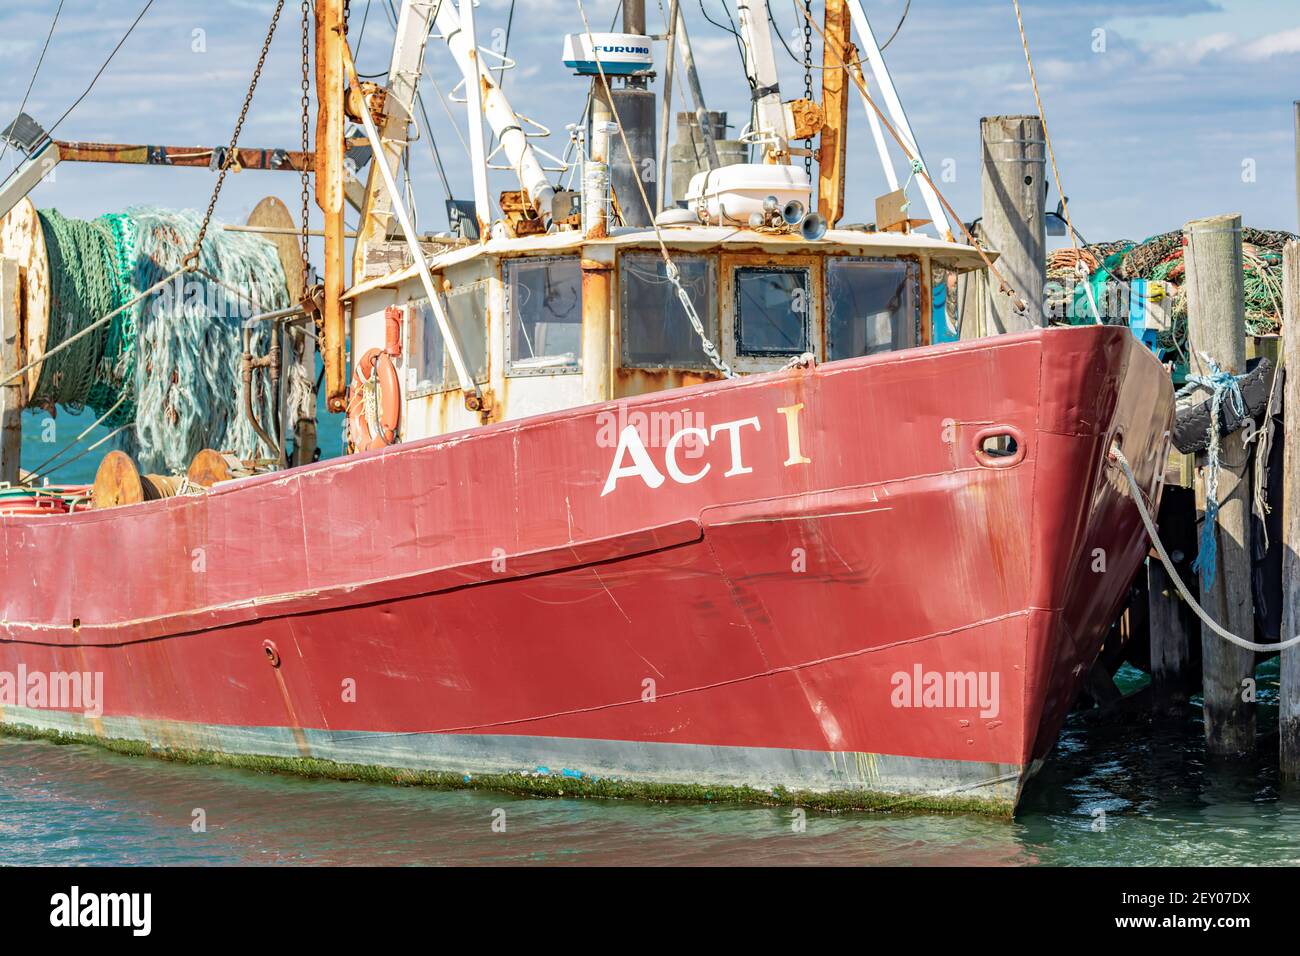 Detailbild des kommerziellen Fischereischiffes Act 1, Montauk, NY Stockfoto